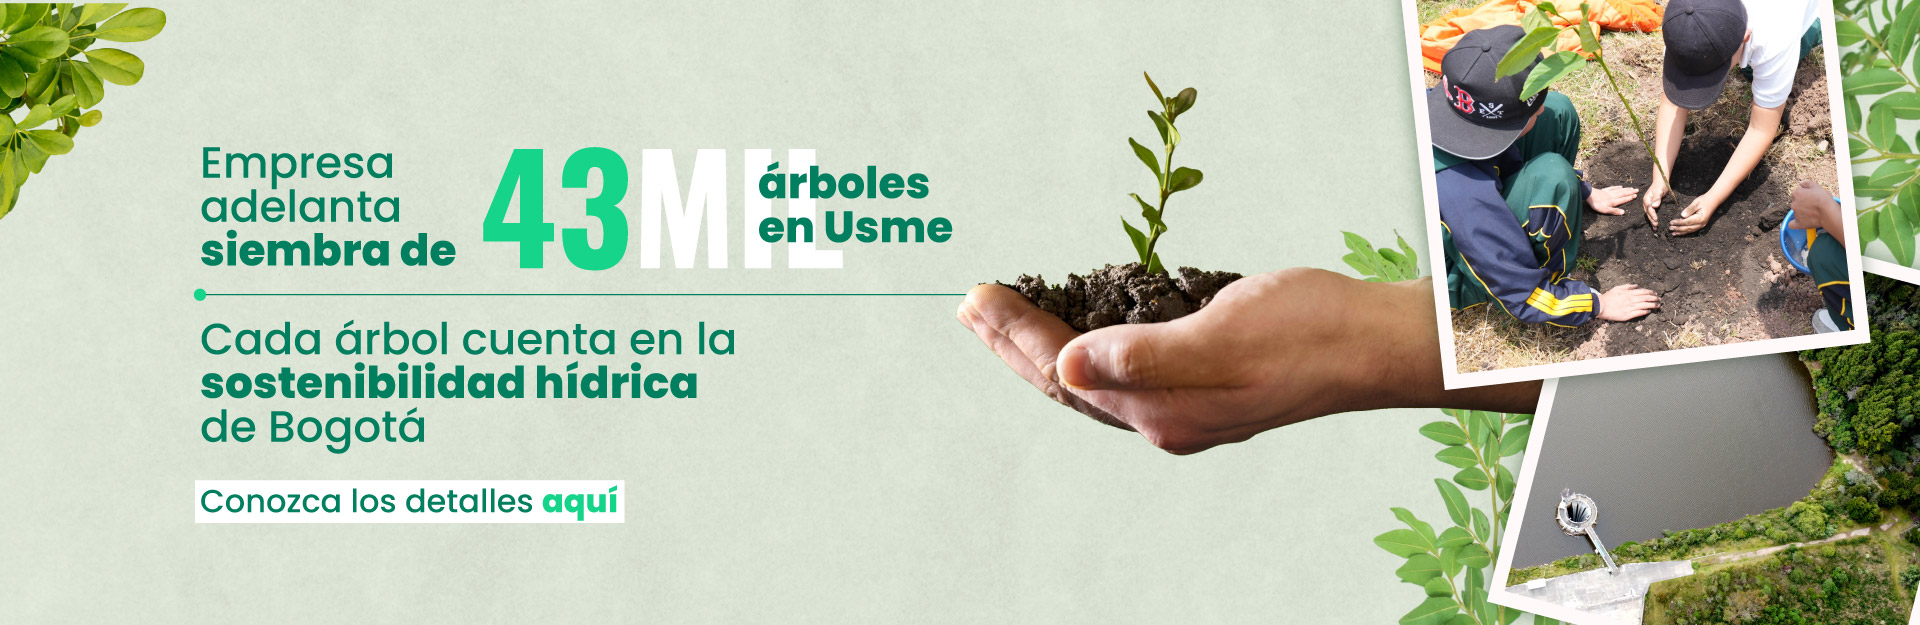 Acueducto adelanta siembra de 43 mil árboles en Usme, cada árbol cuenta en la sostenibilidad hídrica de Bogotá